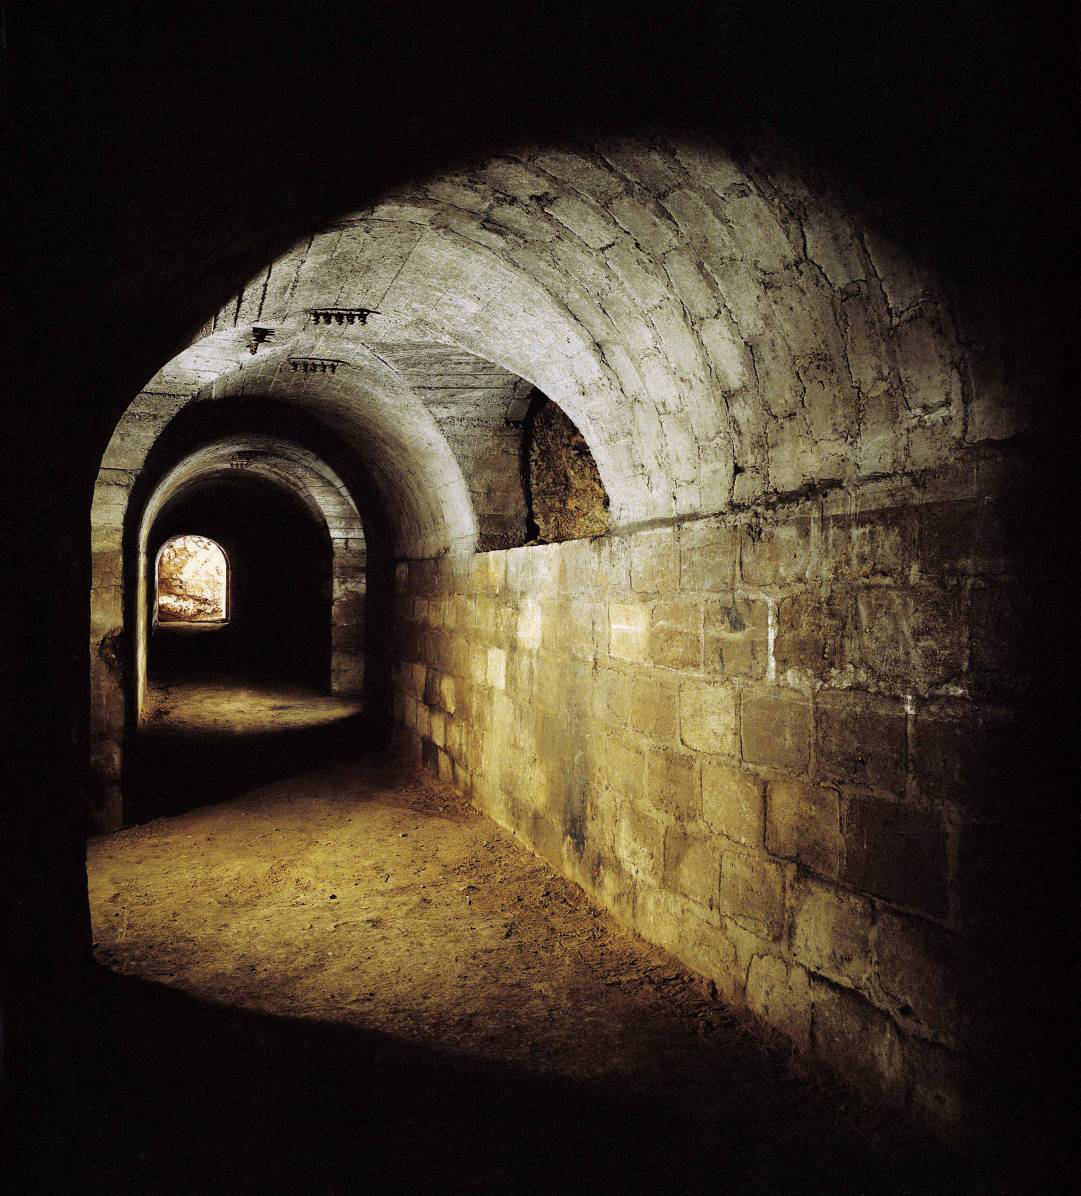 Fotka z chodby v podzemí.